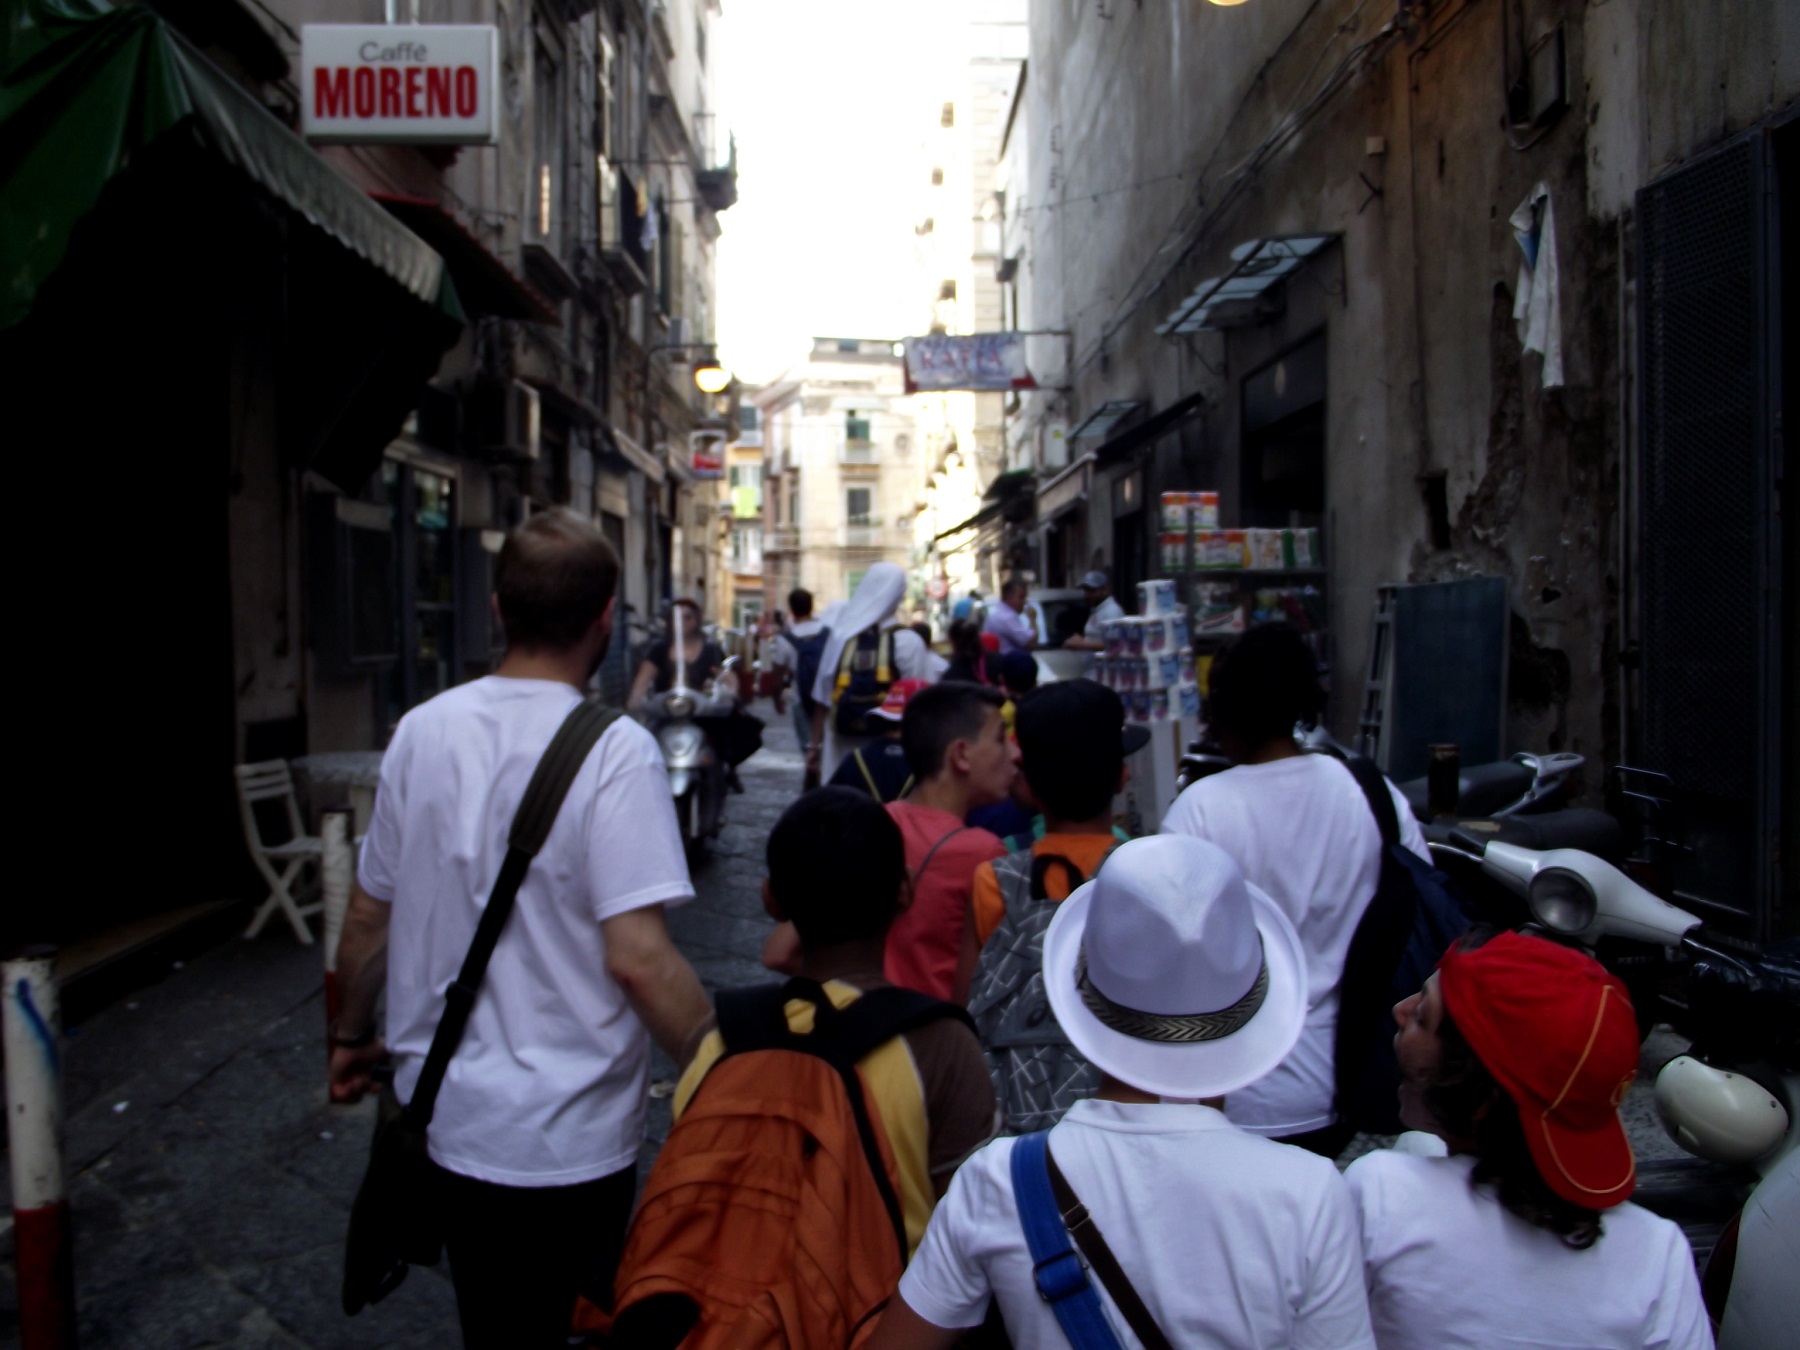 A Napoli, quartieri spagnoli, accanto ai bambini